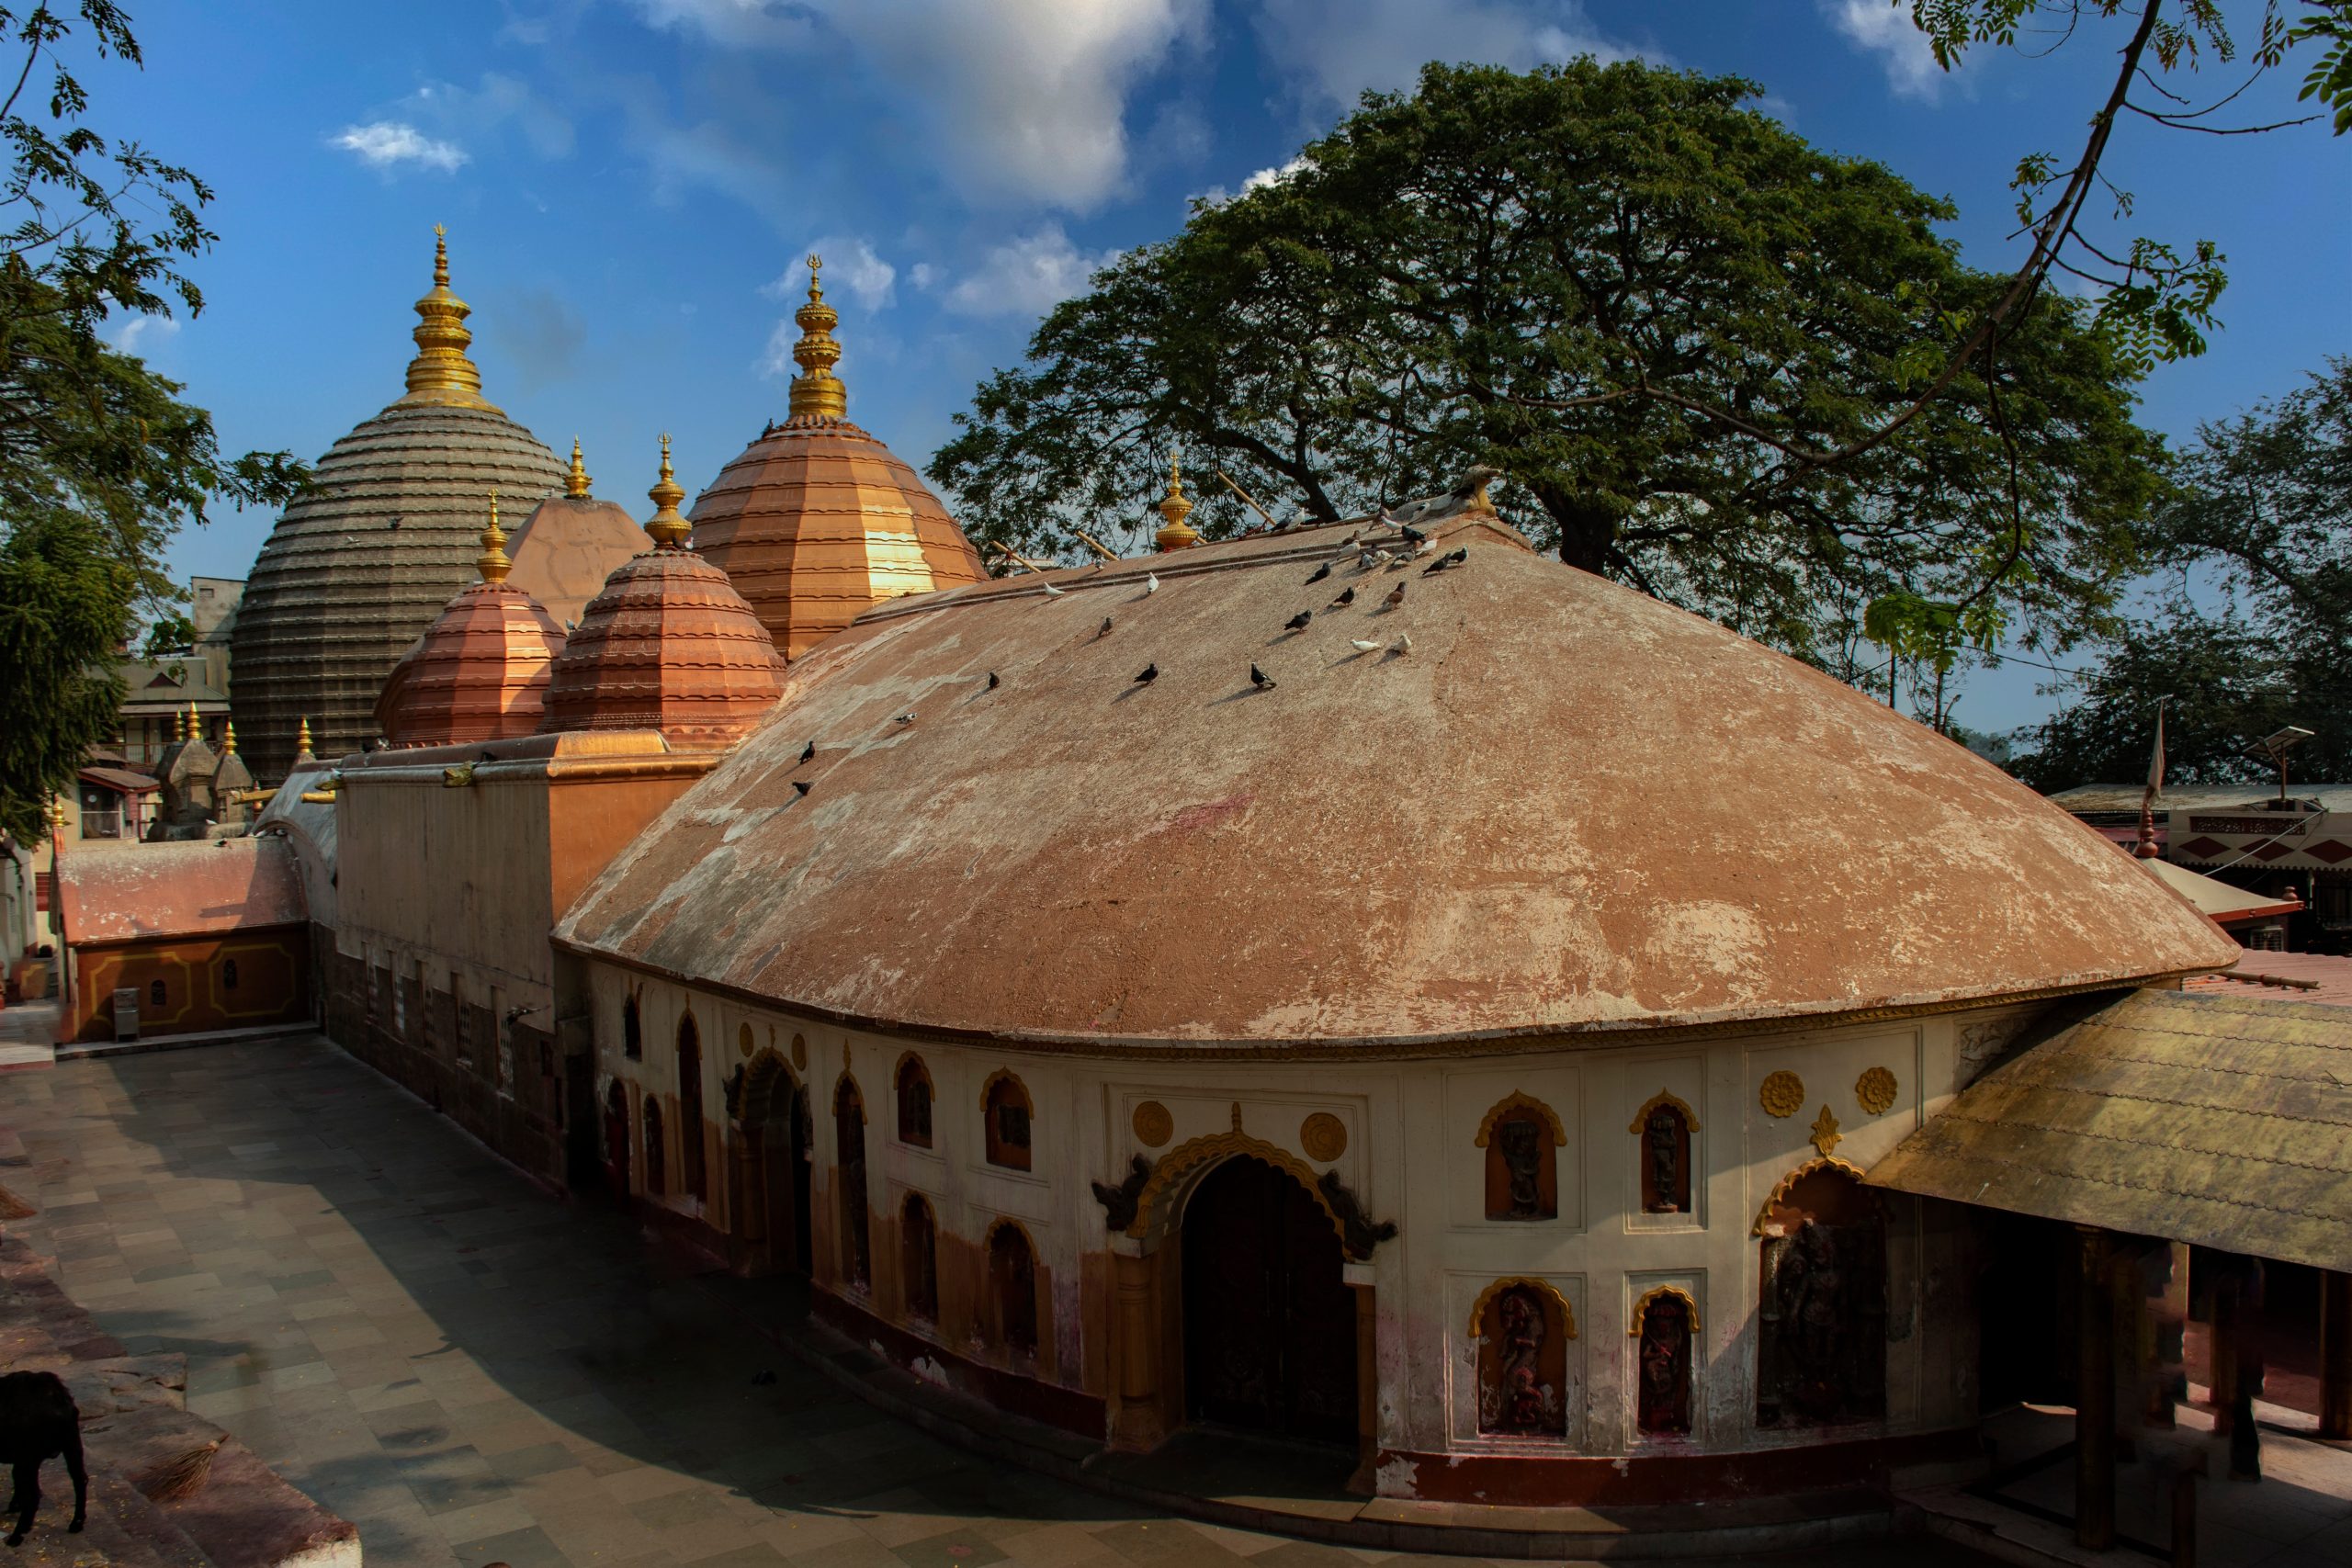 Maa Kamakhya Devi Temple